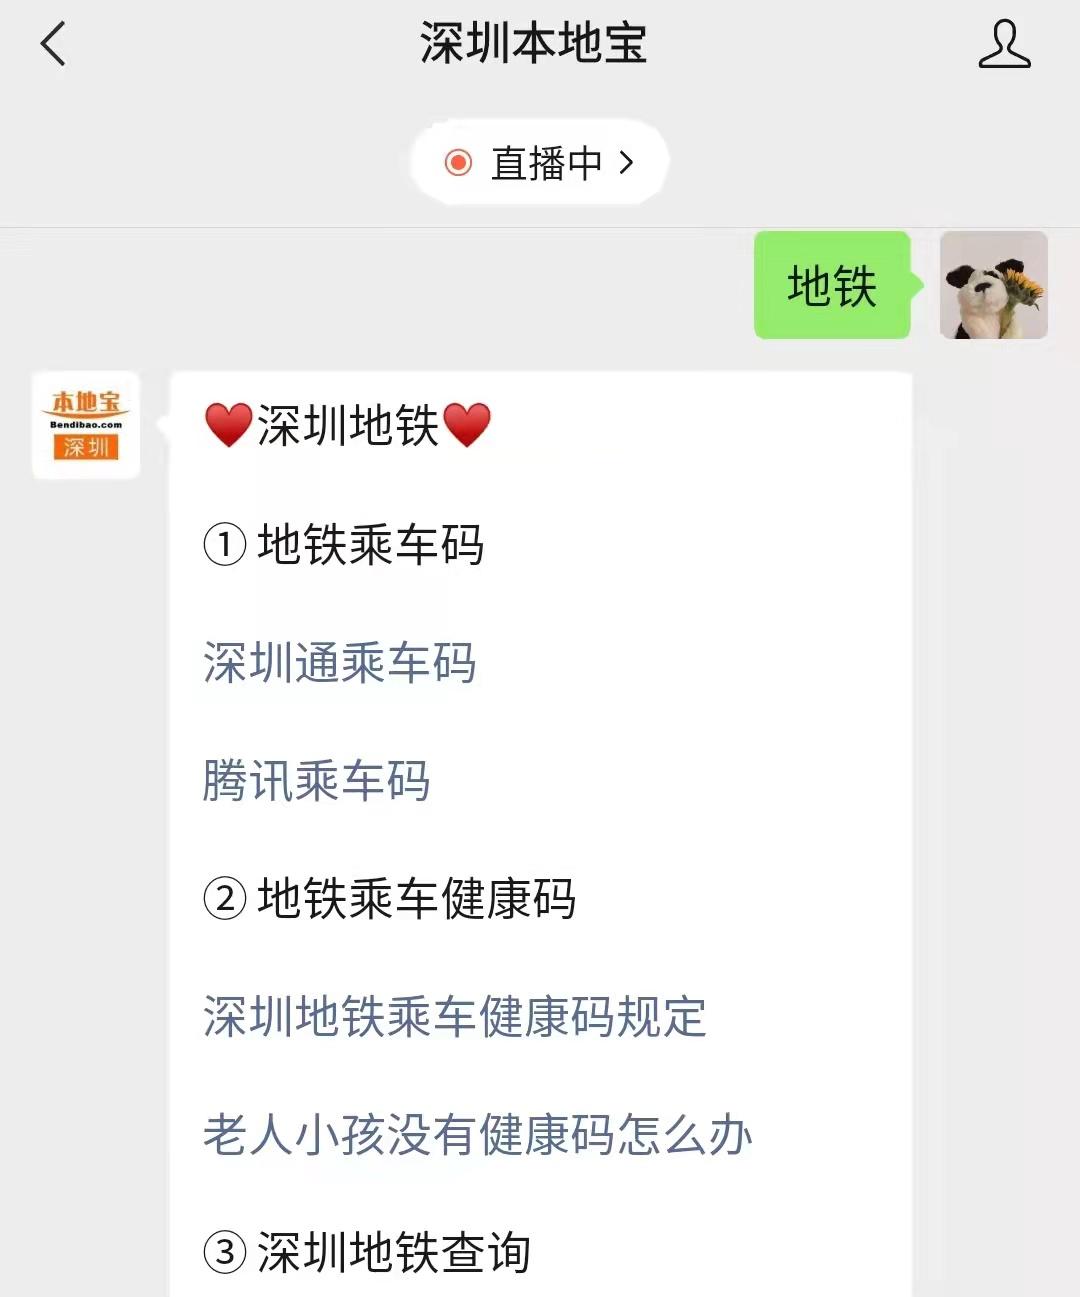 包含深圳地铁官方客户端app的词条